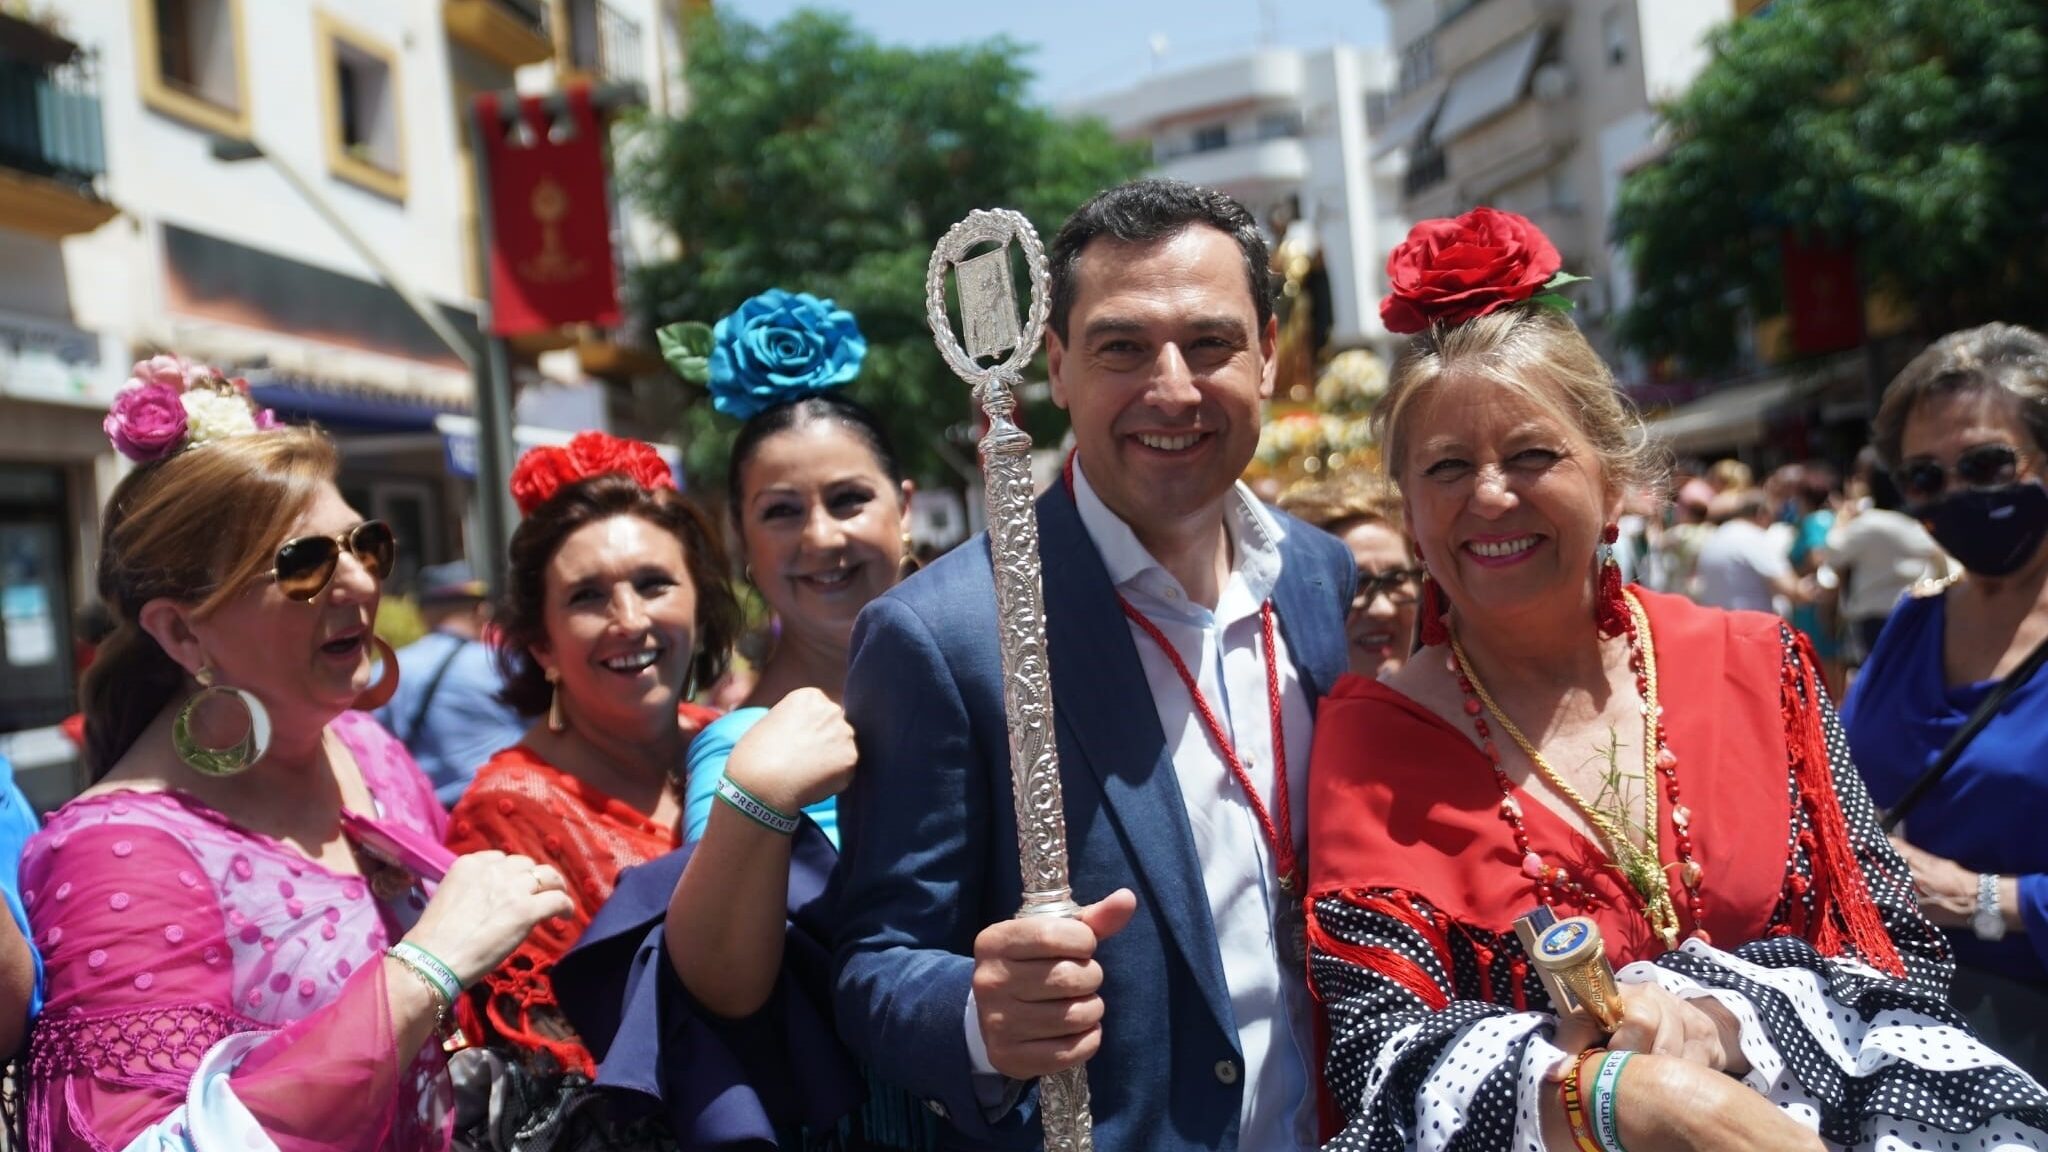 El presidente de la Junta de Andalucía, Juanma Moreno, junto a la alcaldesa de Marbella, Ángeles Muñoz, durante la feria del municipio, en junio de 2022. Foto/ Europa Press